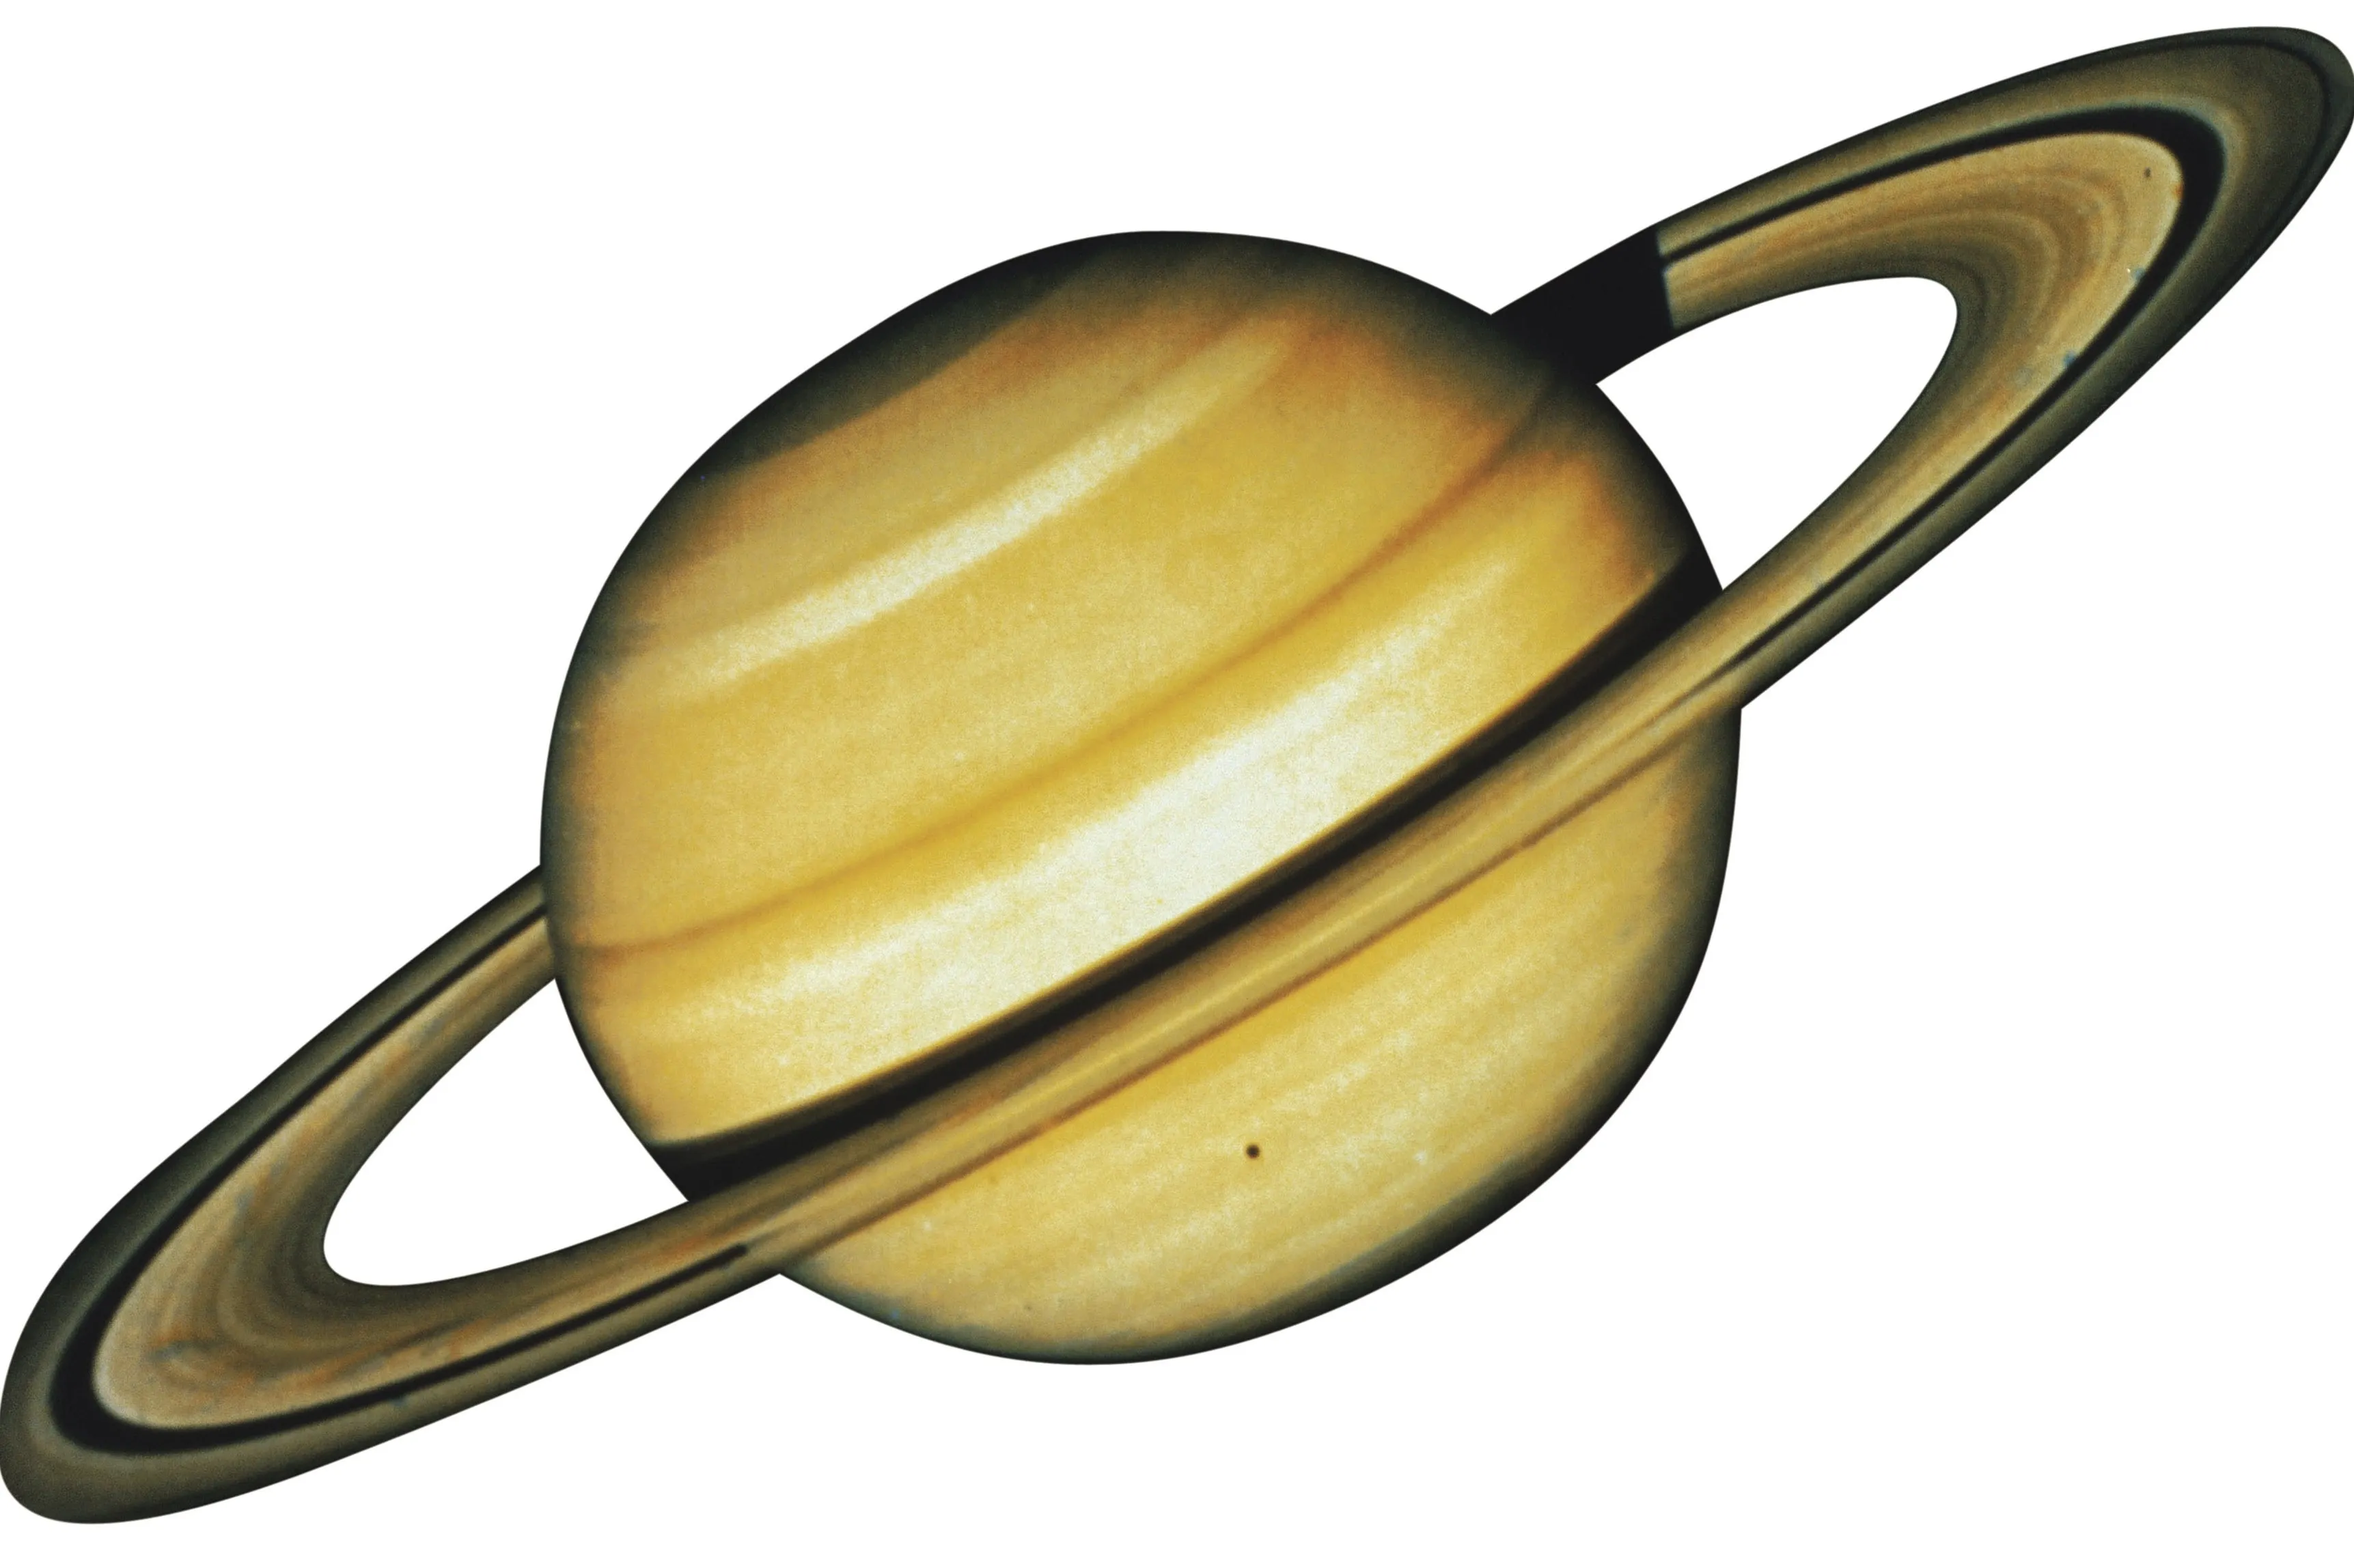 Планета сатурн картинка для детей. Сатурн Планета солнечной системы. Планета Сатурн для детей. Сатурн Планета для детей дошкольного возраста. Изображение планеты Сатурн.